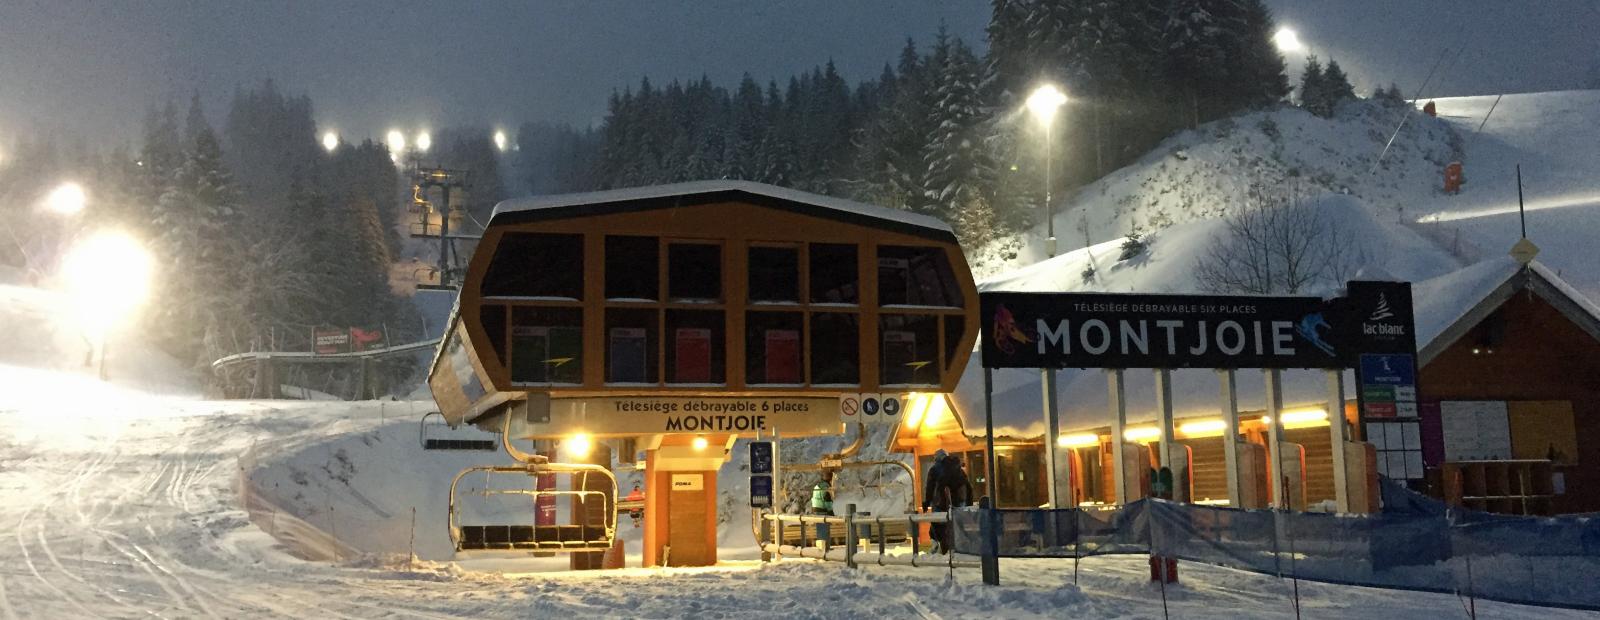 ski-nocturne-station-du-lac-blanc-vosges